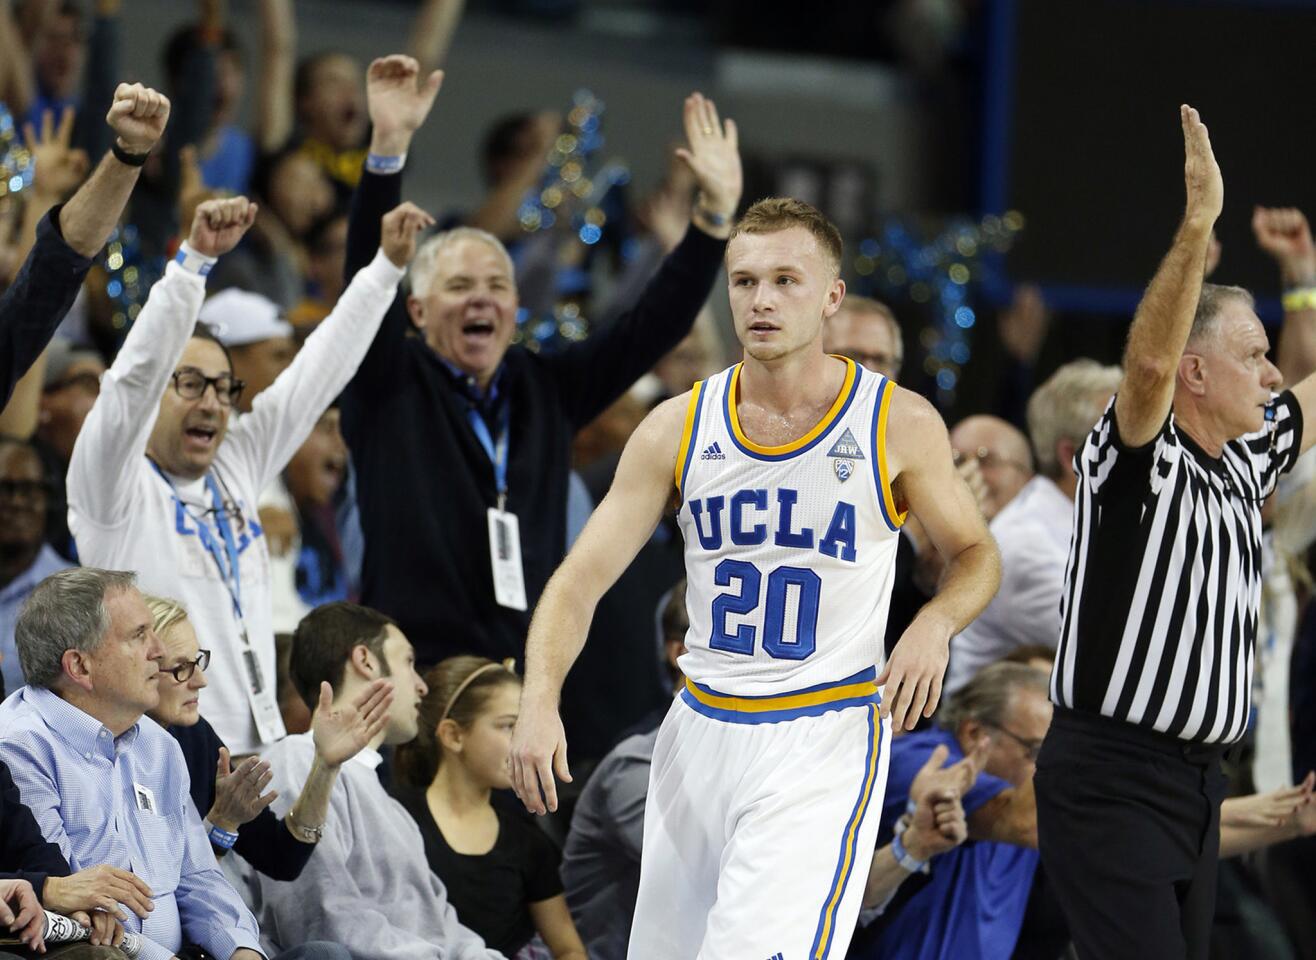 Up next: USC faces UCLA at Pauley Pavilion on Wednesday